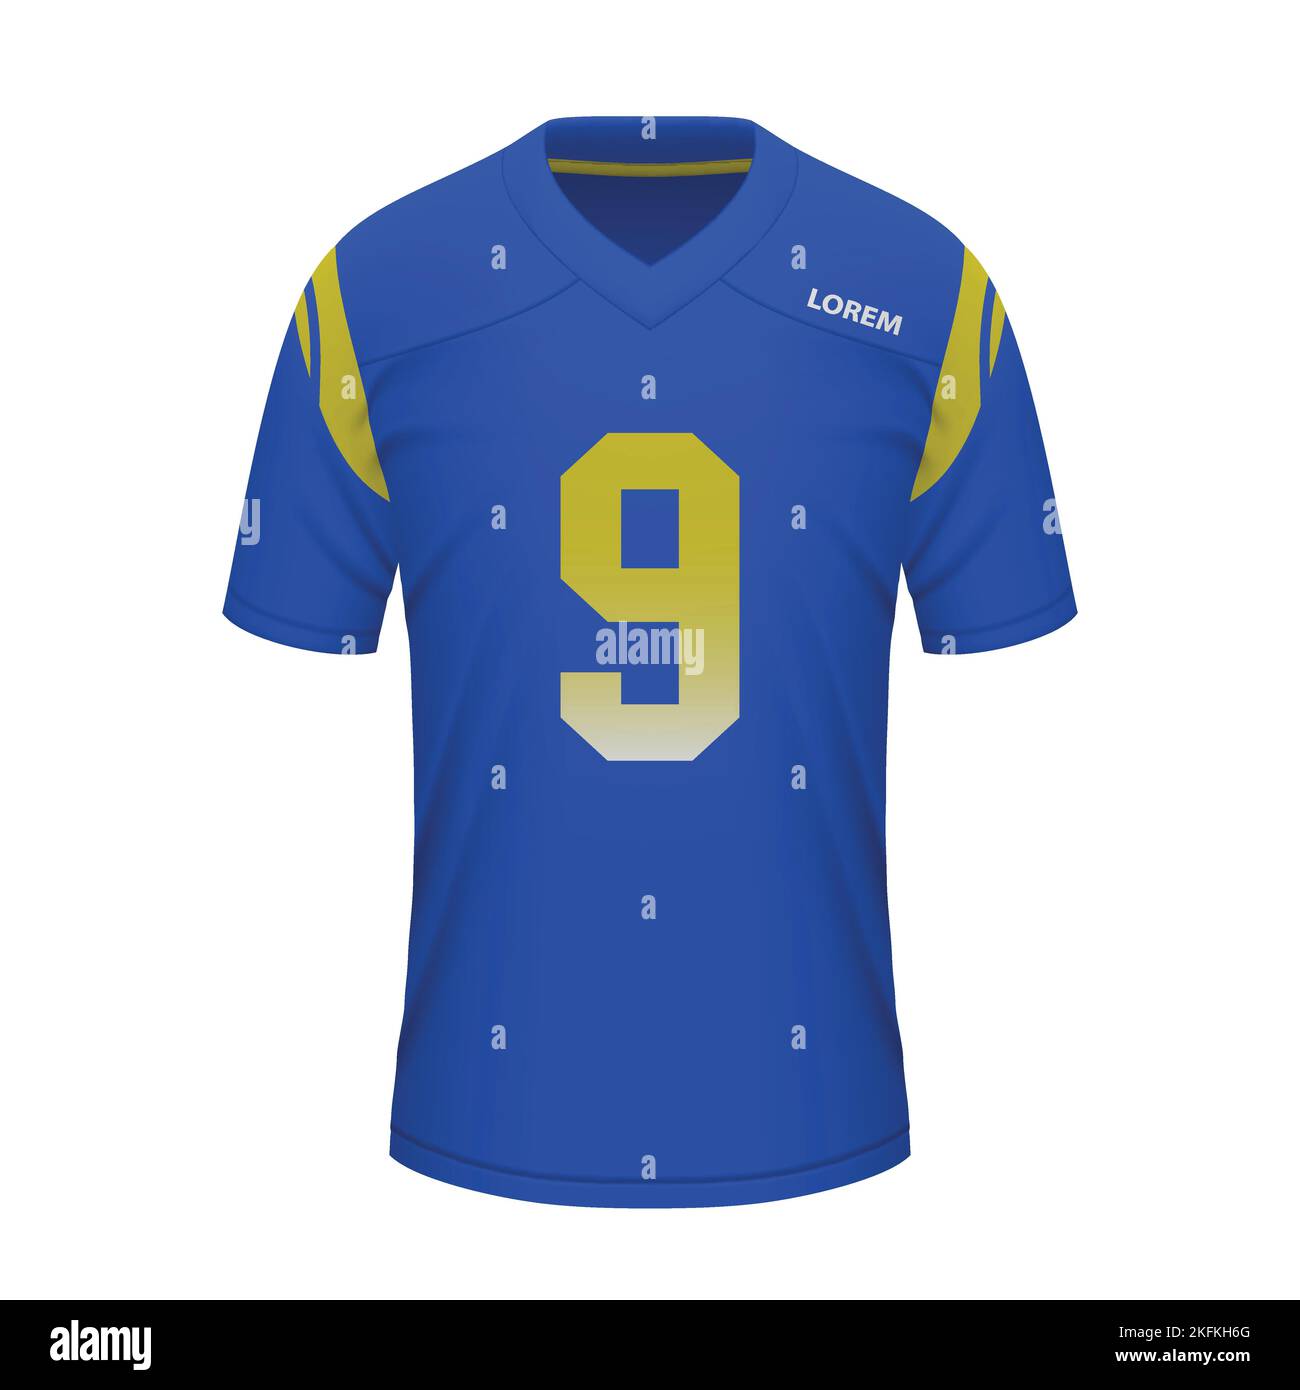 Maillot de football américain réaliste de Los Angeles Rams, modèle de maillot pour l'uniforme de sport Illustration de Vecteur